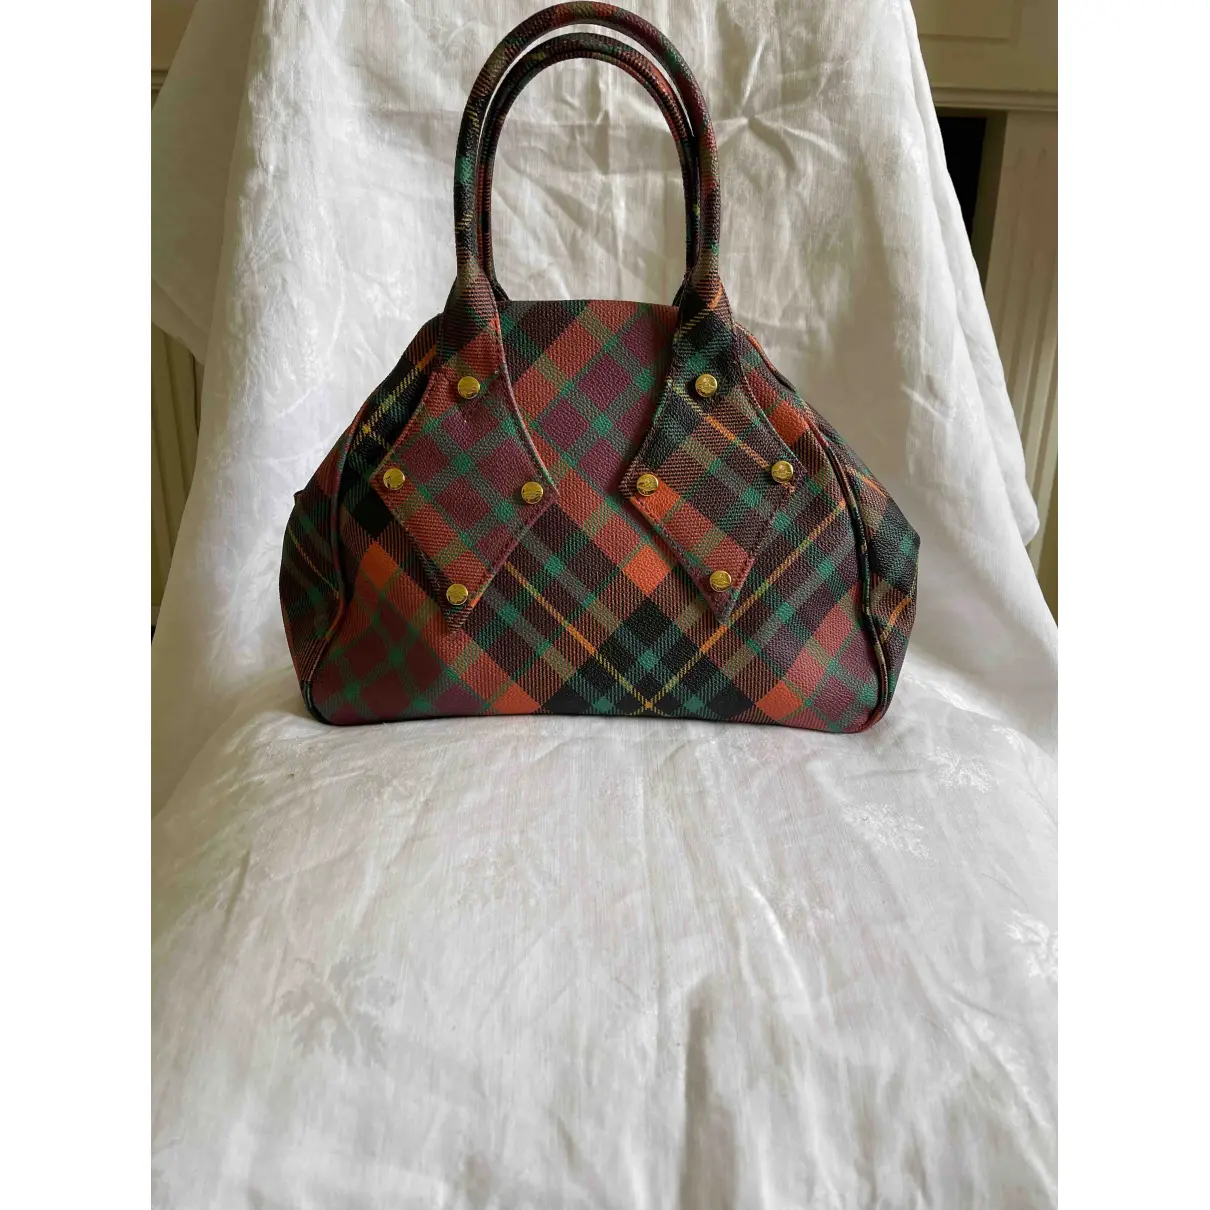 Buy Vivienne Westwood Leather handbag online